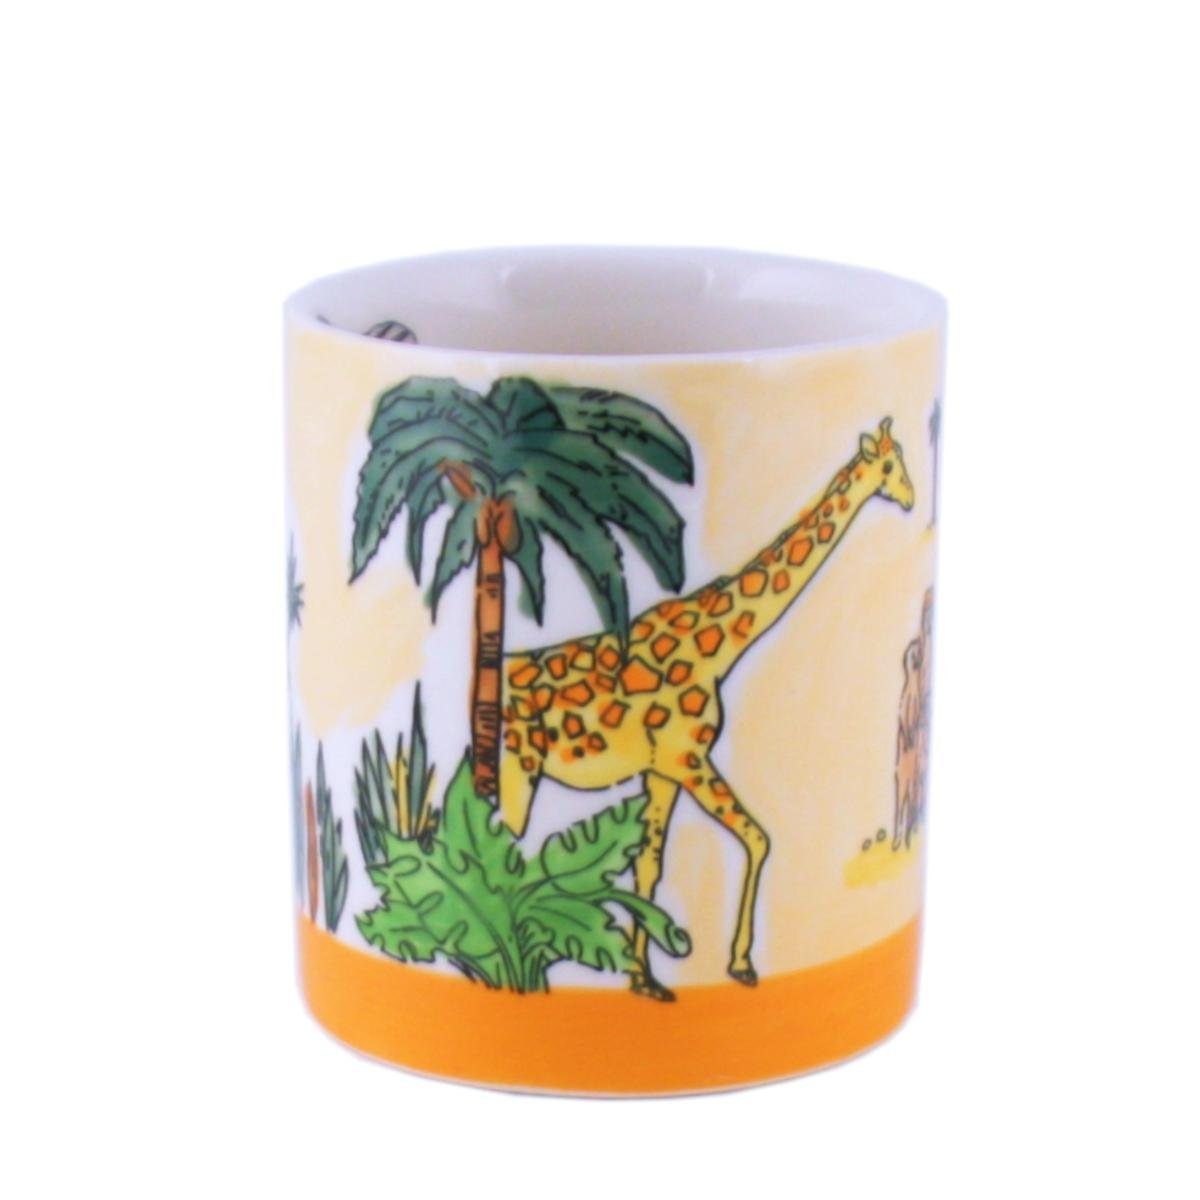 Mila Keramik-Becher Keramik Africa-Hideaway, Mila Becher